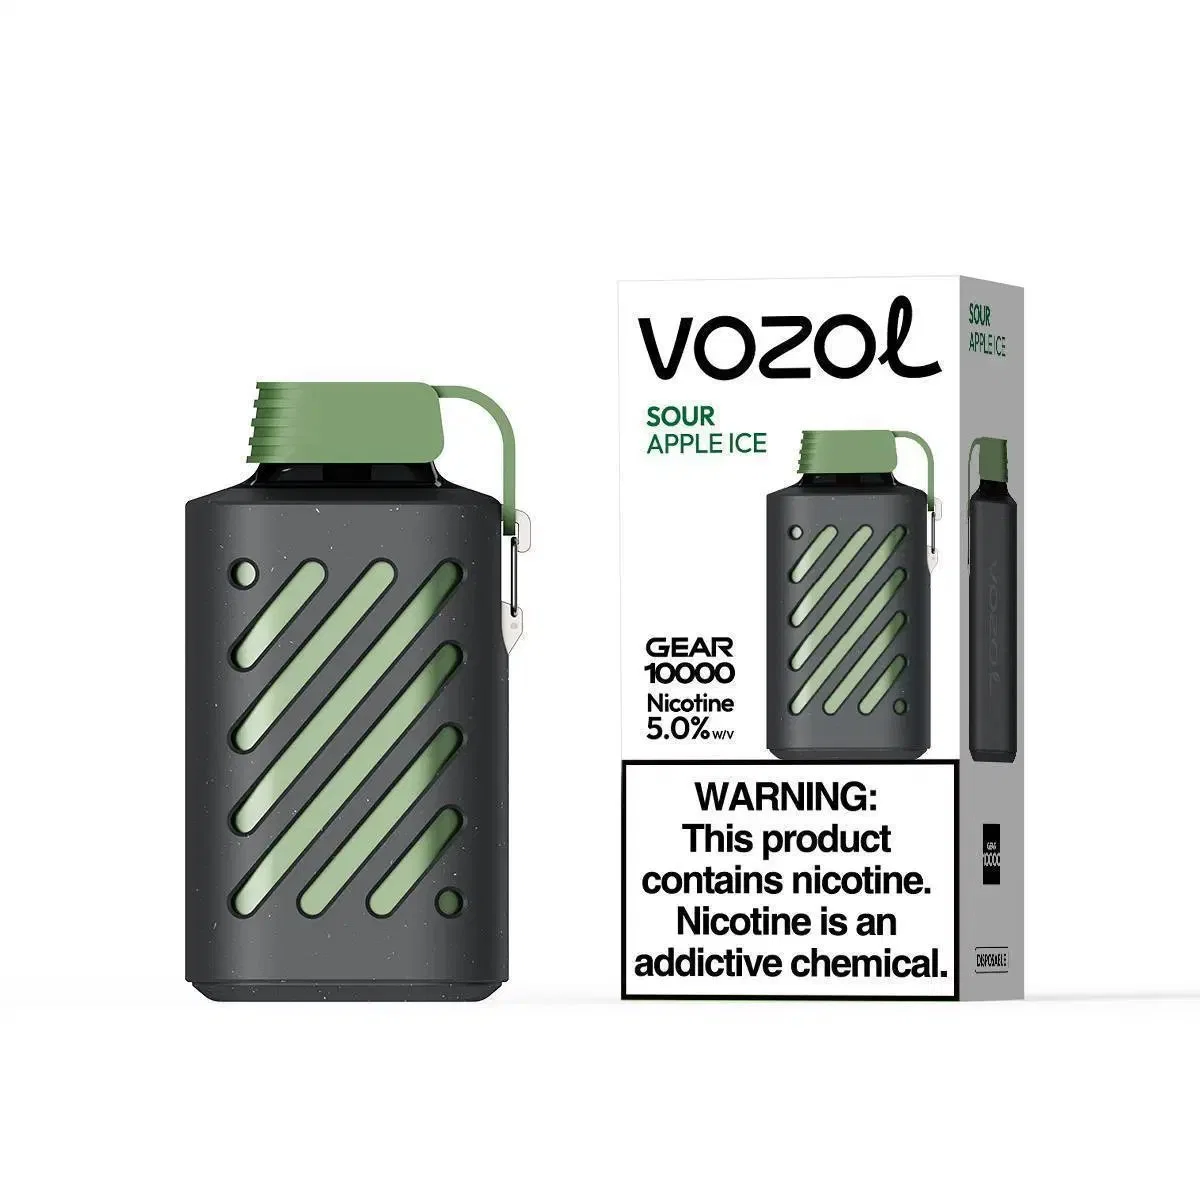 Vozol Gear 10000 Puff Big Cloud Rauchen Einweg-Vape Großhandel E-Zigarette Großhandel Gerät Zerstäuber 10000puffs leer E-Cig Pod Vaporizer Vape